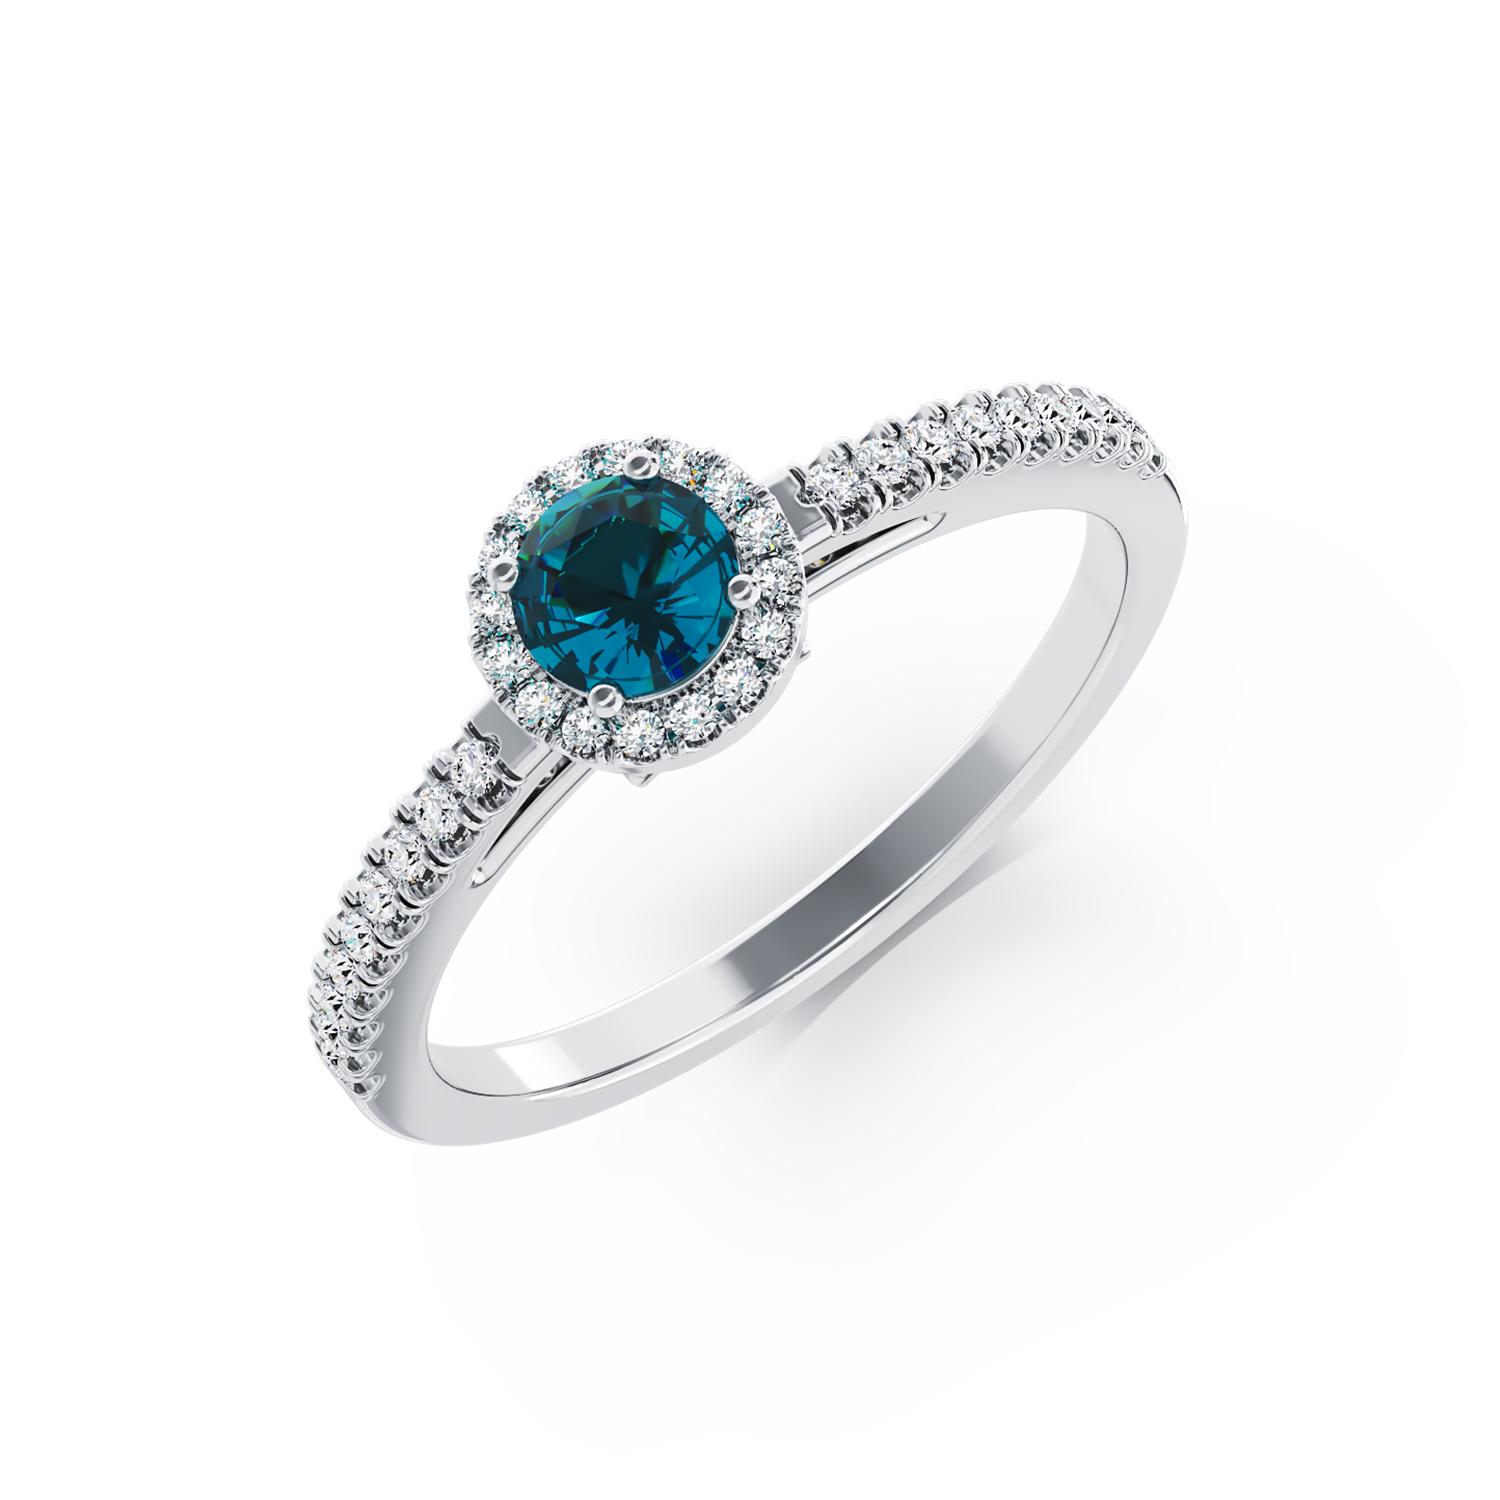 18 karátos fehérarany eljegyzési gyűrű 0.22 karátos kék gyémánttal és 0.18 karátos tiszta gyémántokkal